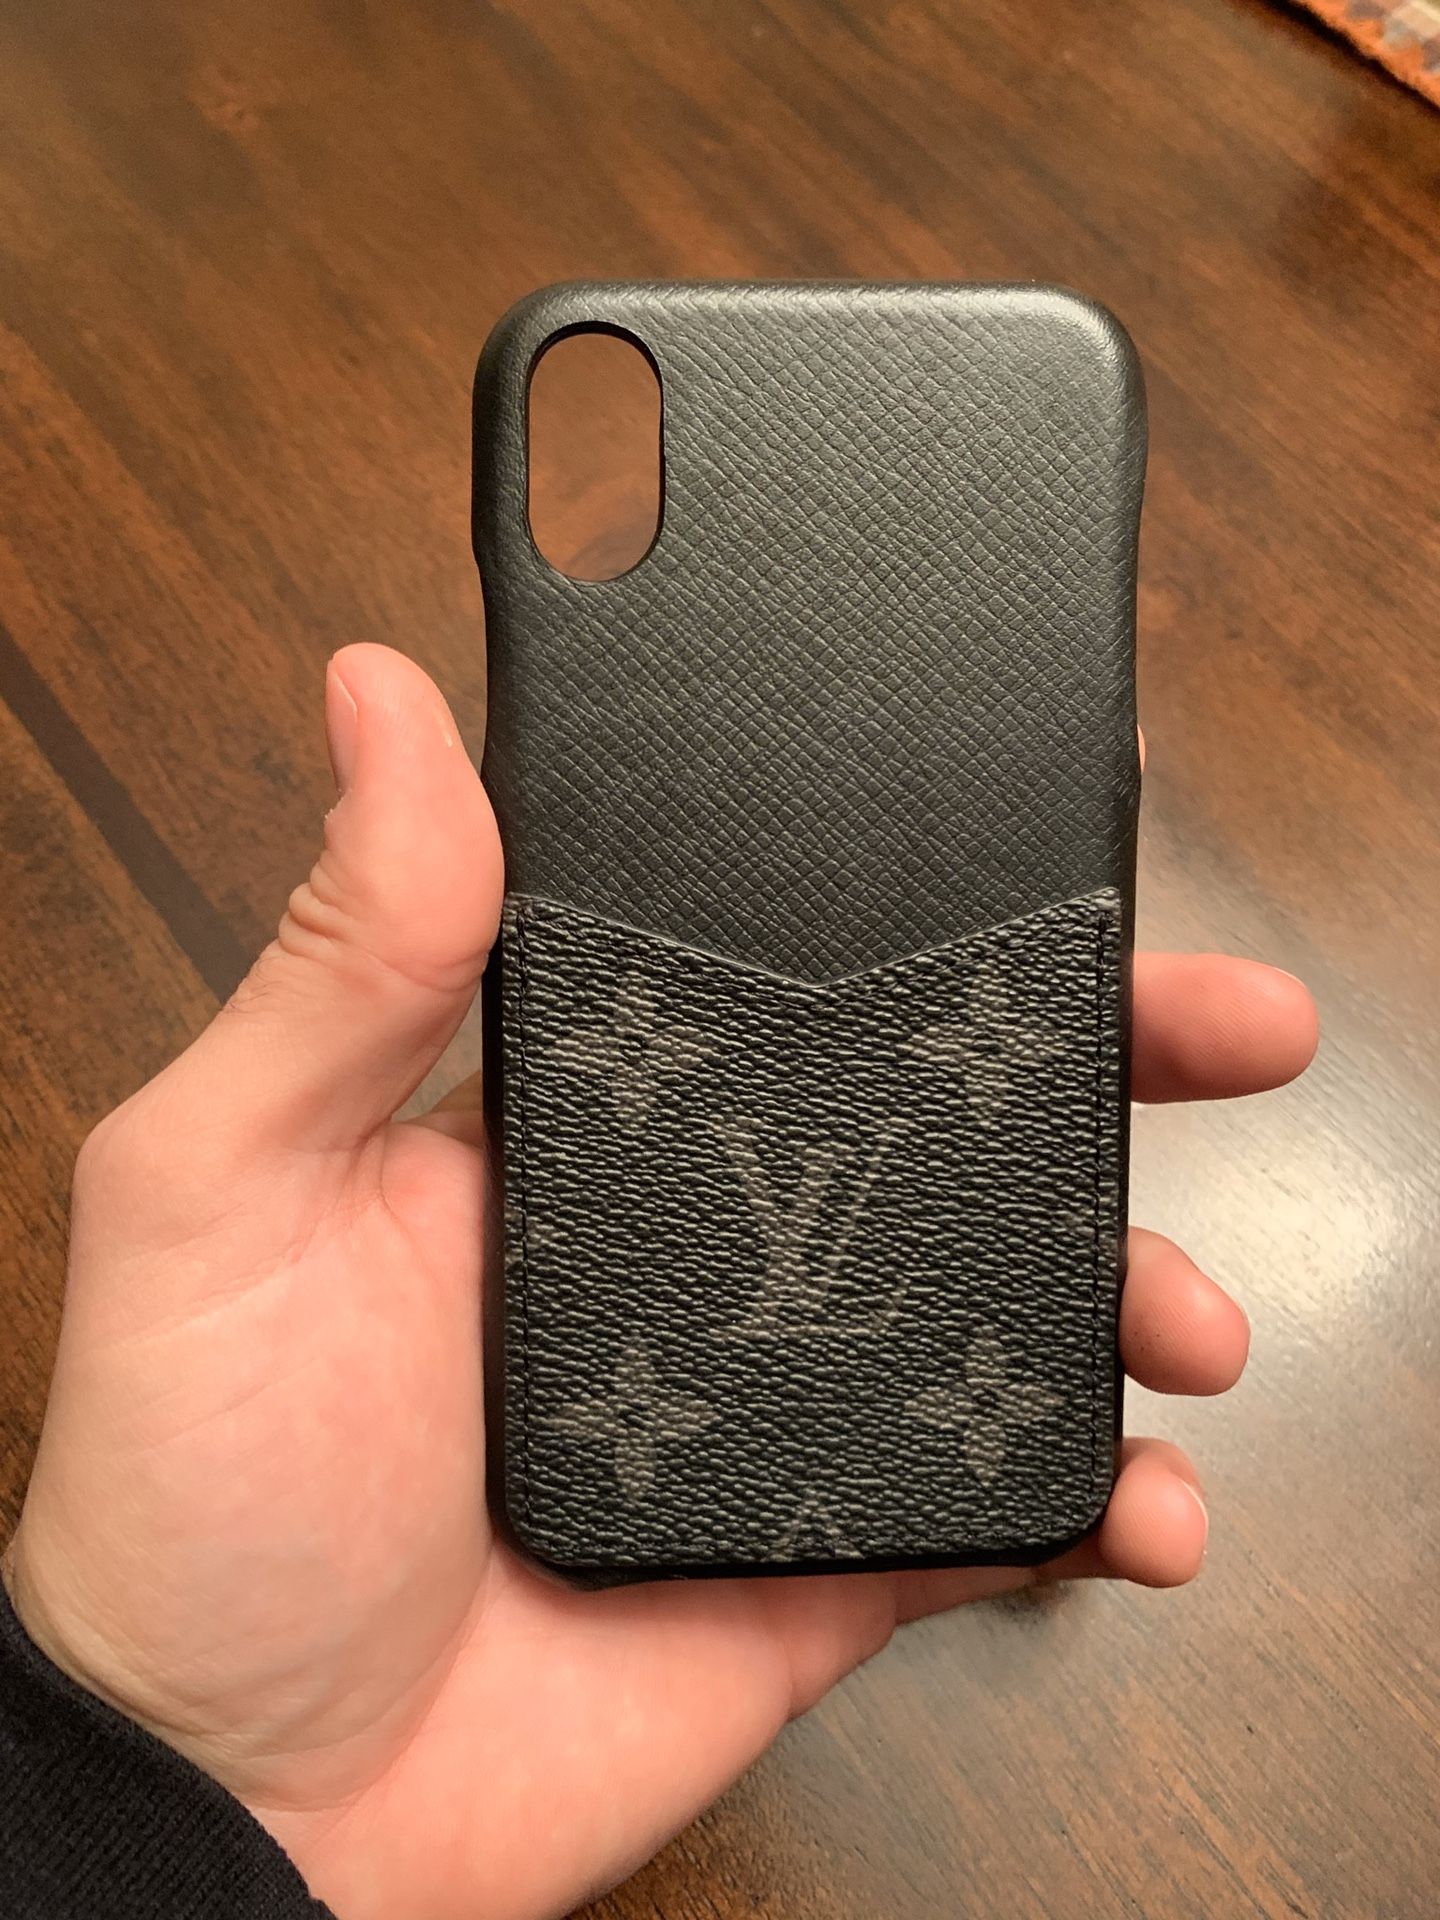 1:1 Louis Vuitton iPhone X/XS case.